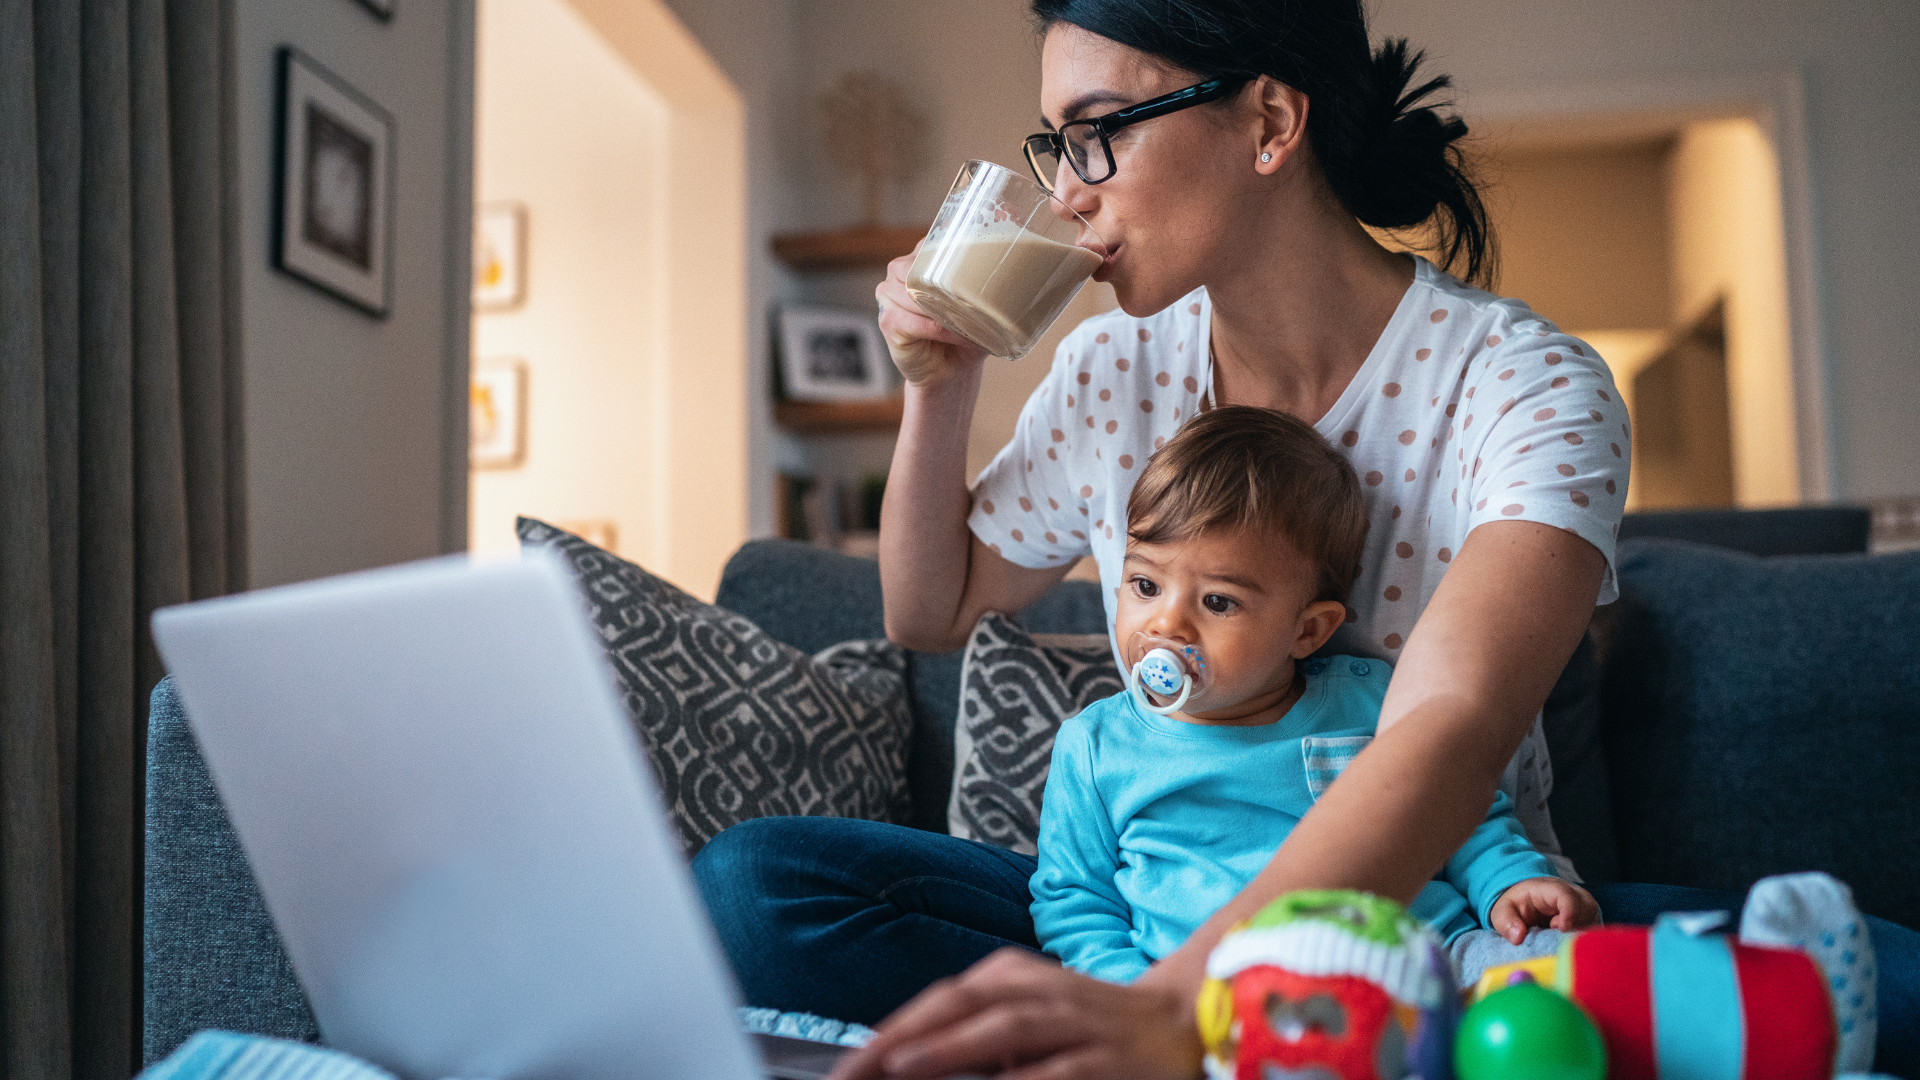 Frau sitzt auf dem Sofa mit einem Kleinkind auf dem Stoß. Sie bedient einen Laptop und trinkt dabei einen Milchkaffee. Das Kind schaut gebannt auf den Bildschirm.